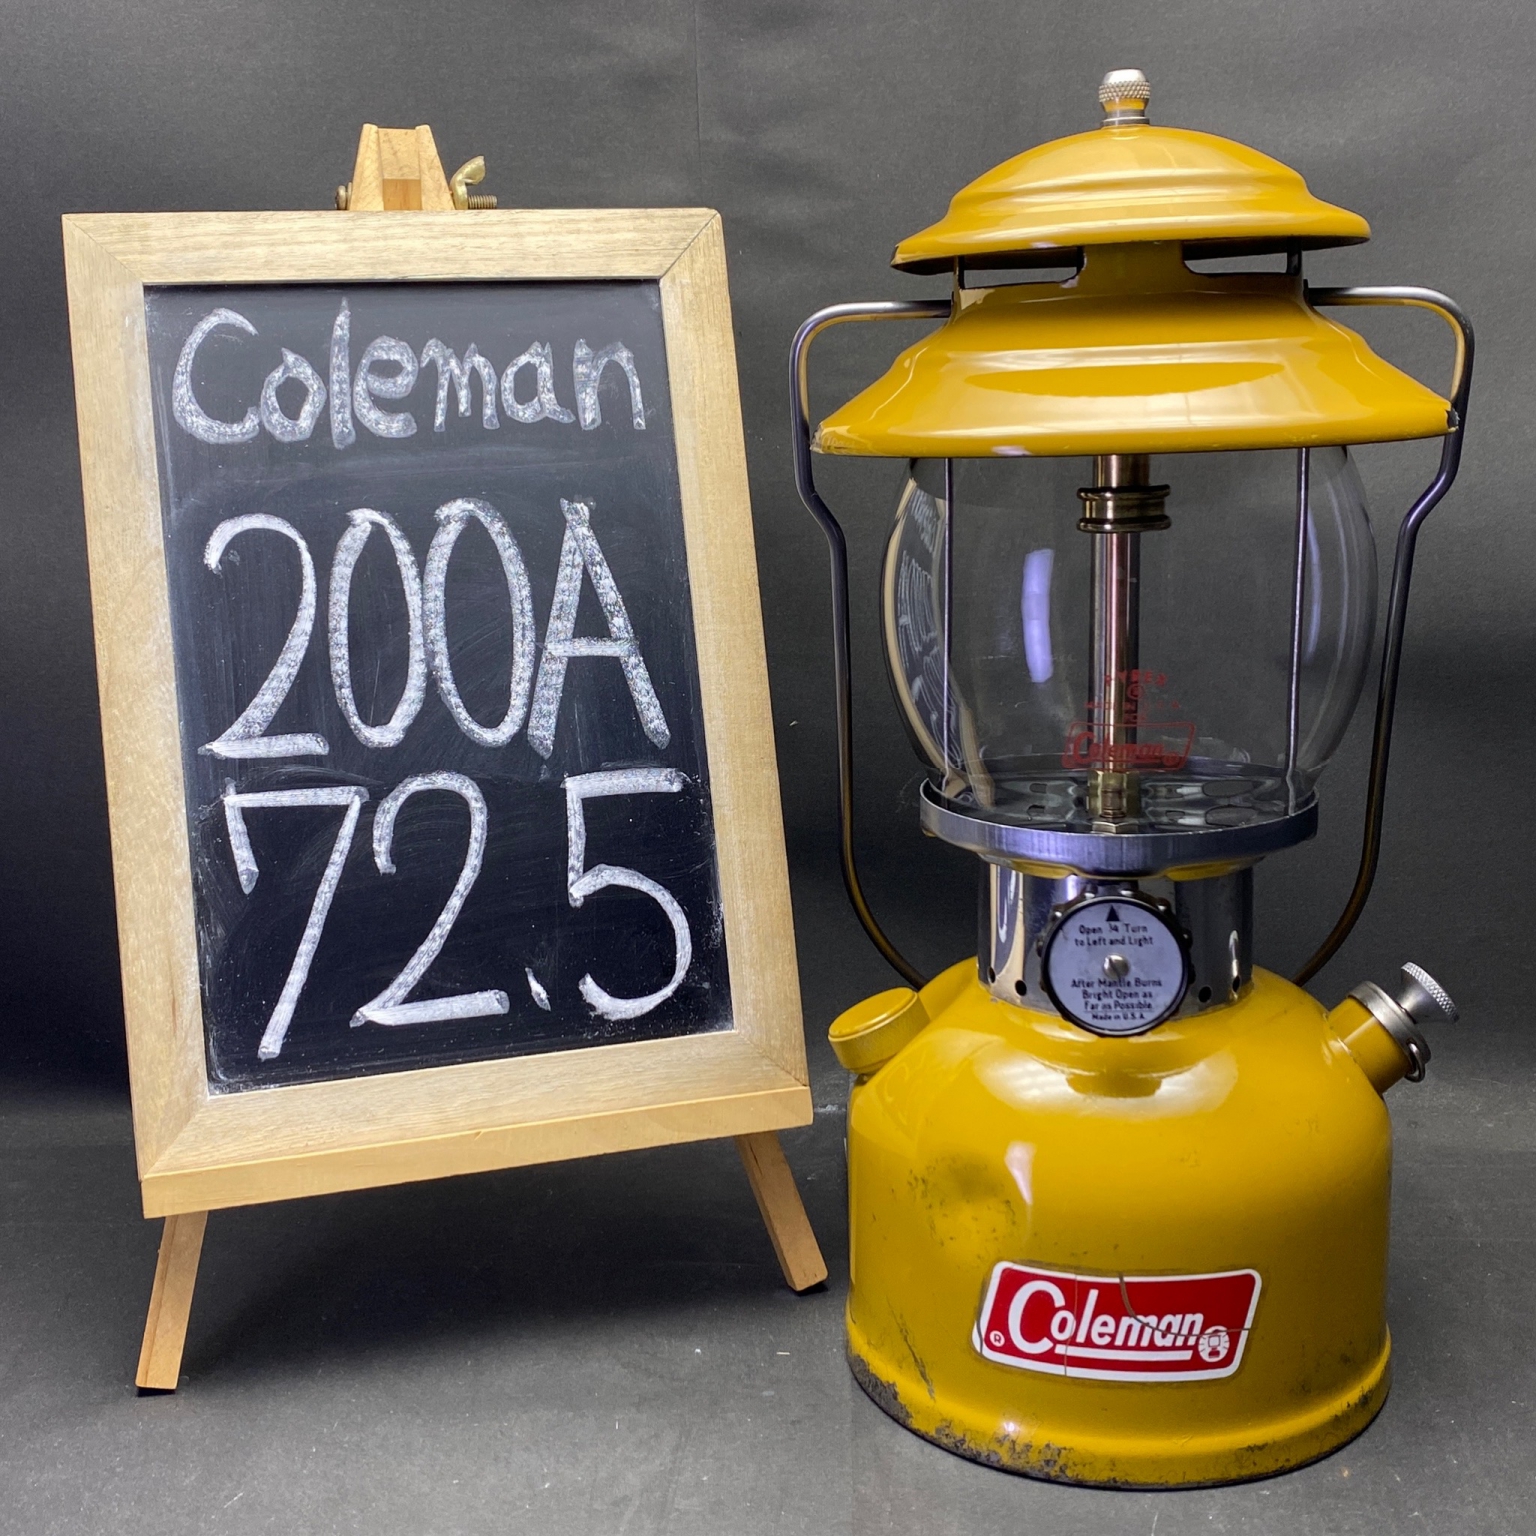 coleman 200a lantern